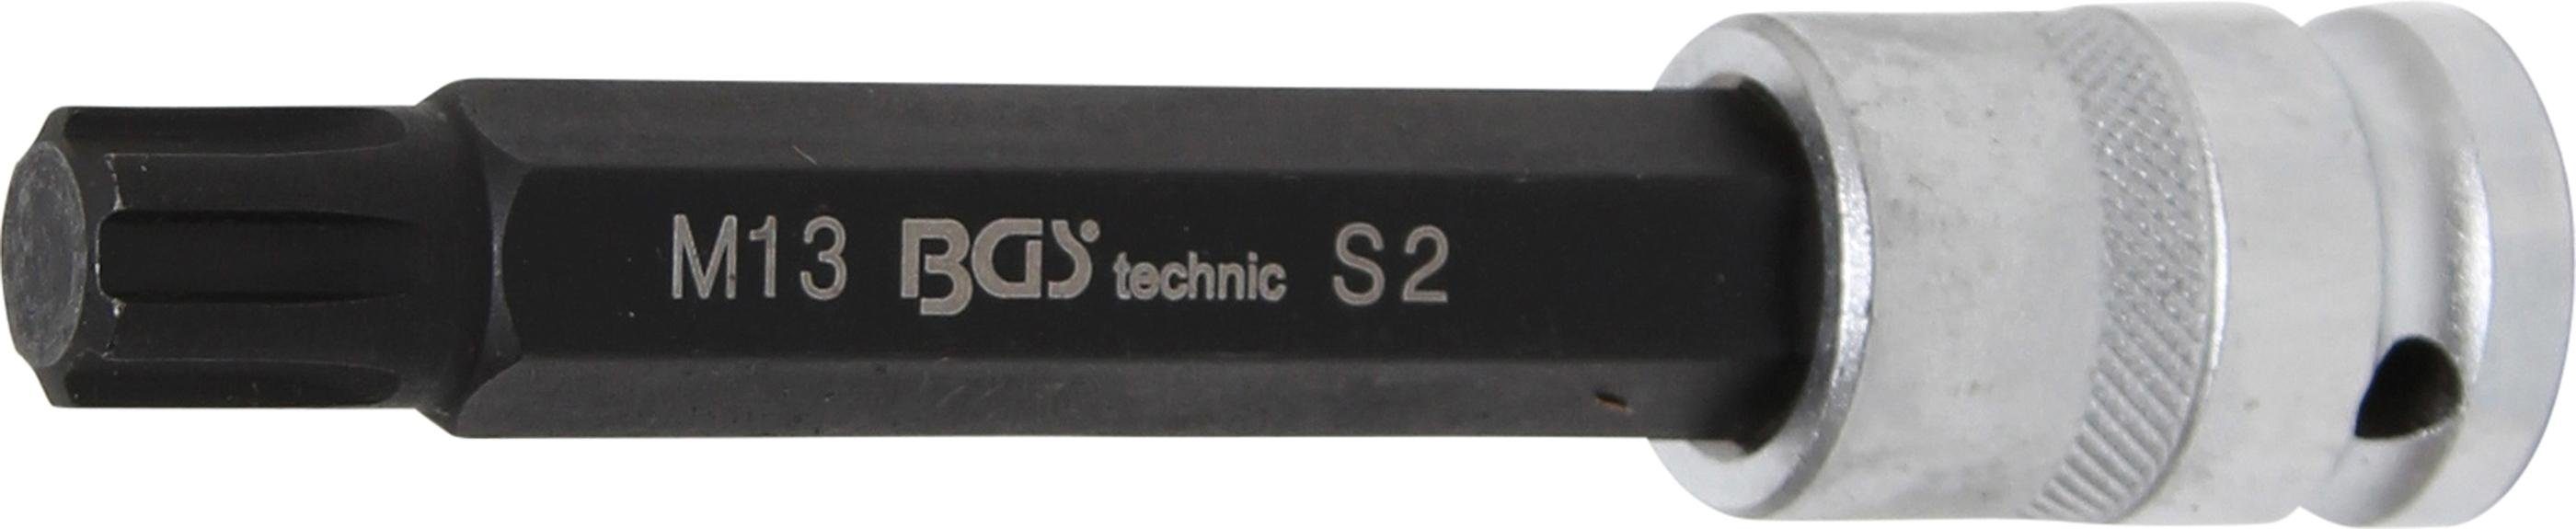 BGS technic Bit-Schraubendreher Bit-Einsatz, Länge 120 mm, Antrieb Innenvierkant 12,5 mm (1/2), Keil-Profil (für RIBE) M13